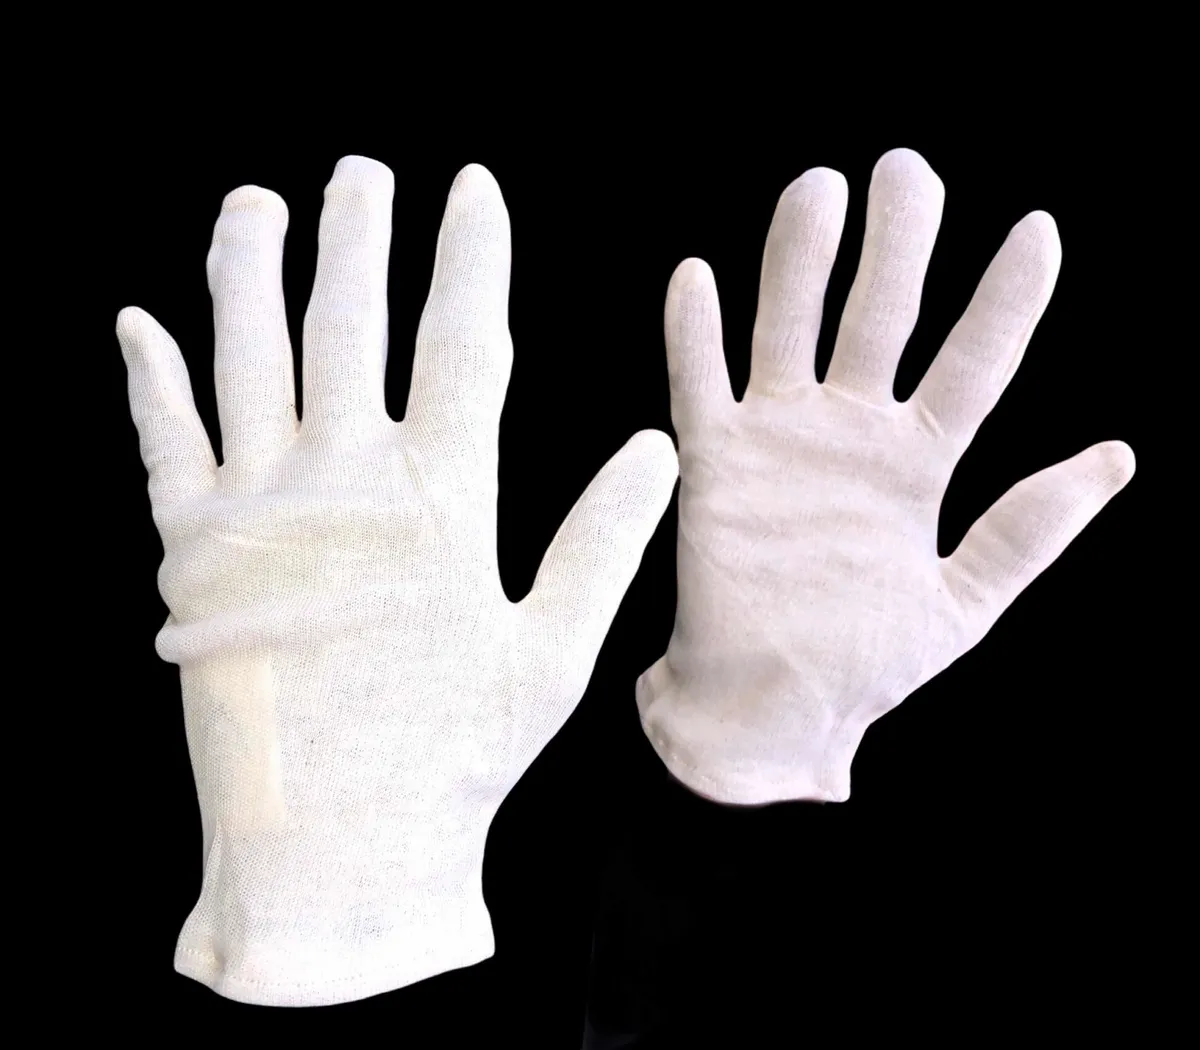 De inspección de seguridad Guante mano Algodón guantes blancos de algodón  puro ESD - China Guante de seguridad guante de trabajo y el trabajo guante  precio